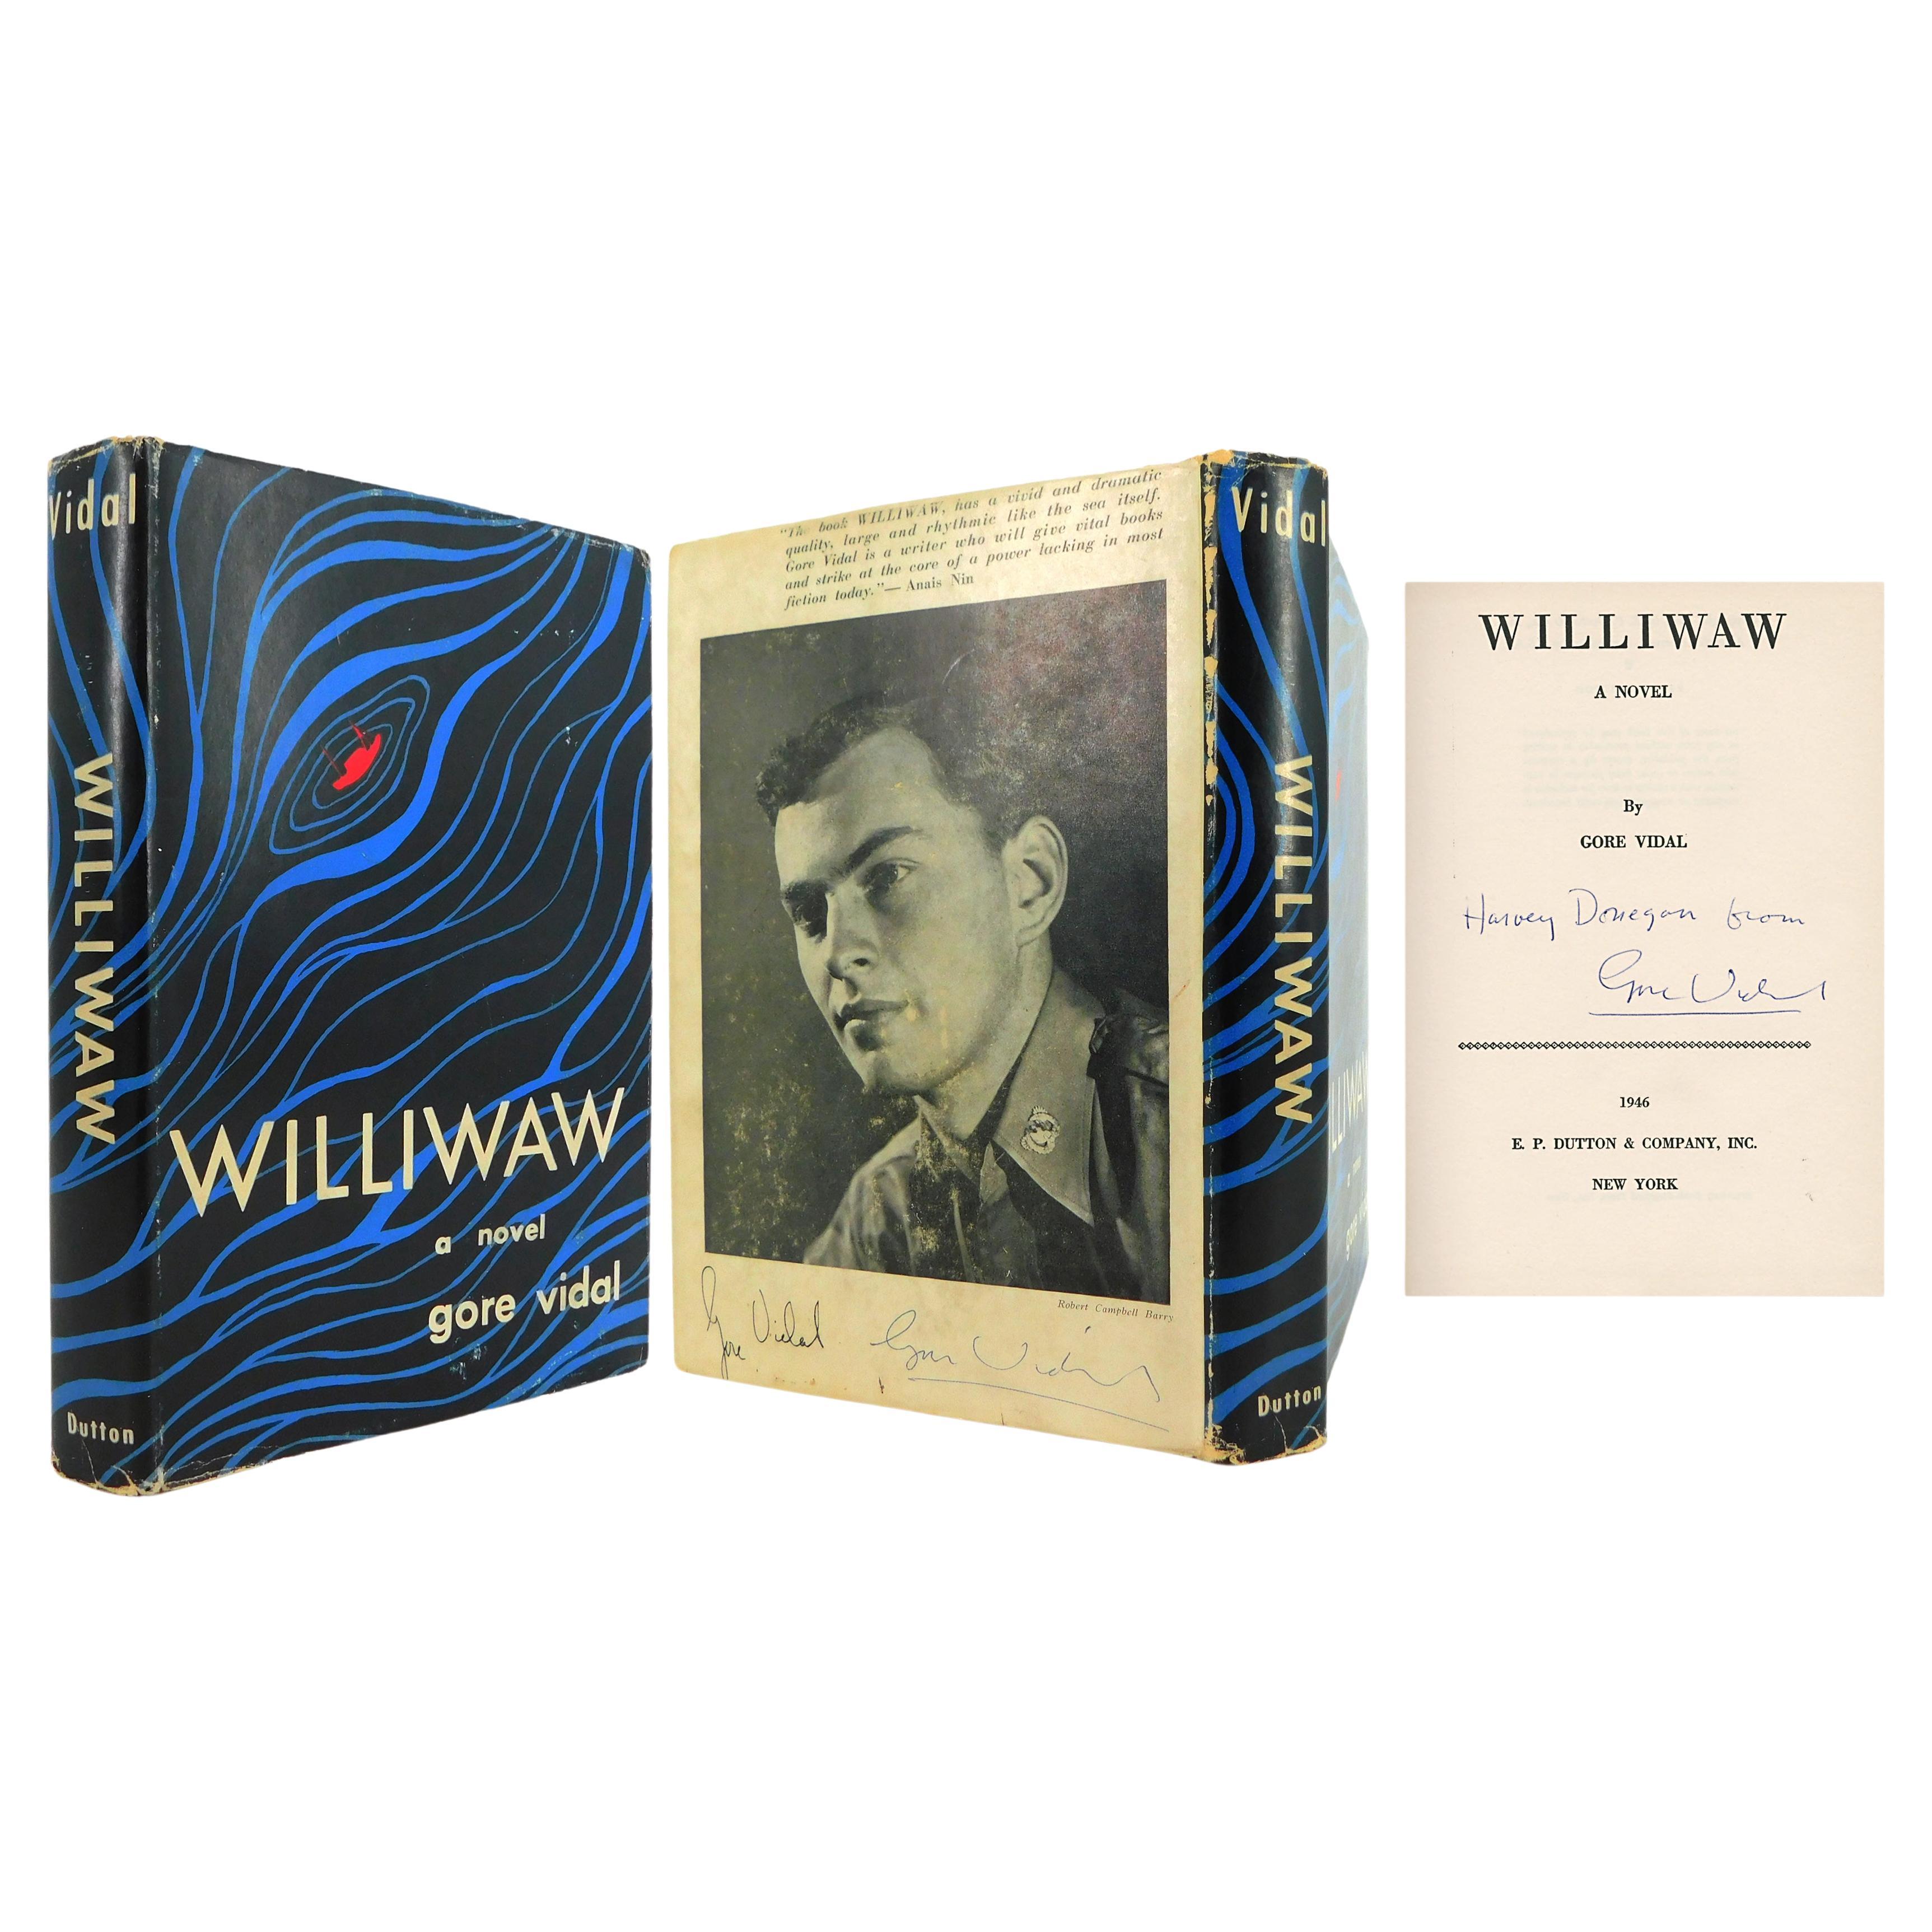 Le premier roman de GORE VIDAL « Williwaw », ÉDITION LA PLUS NUMÉROIRE en vente